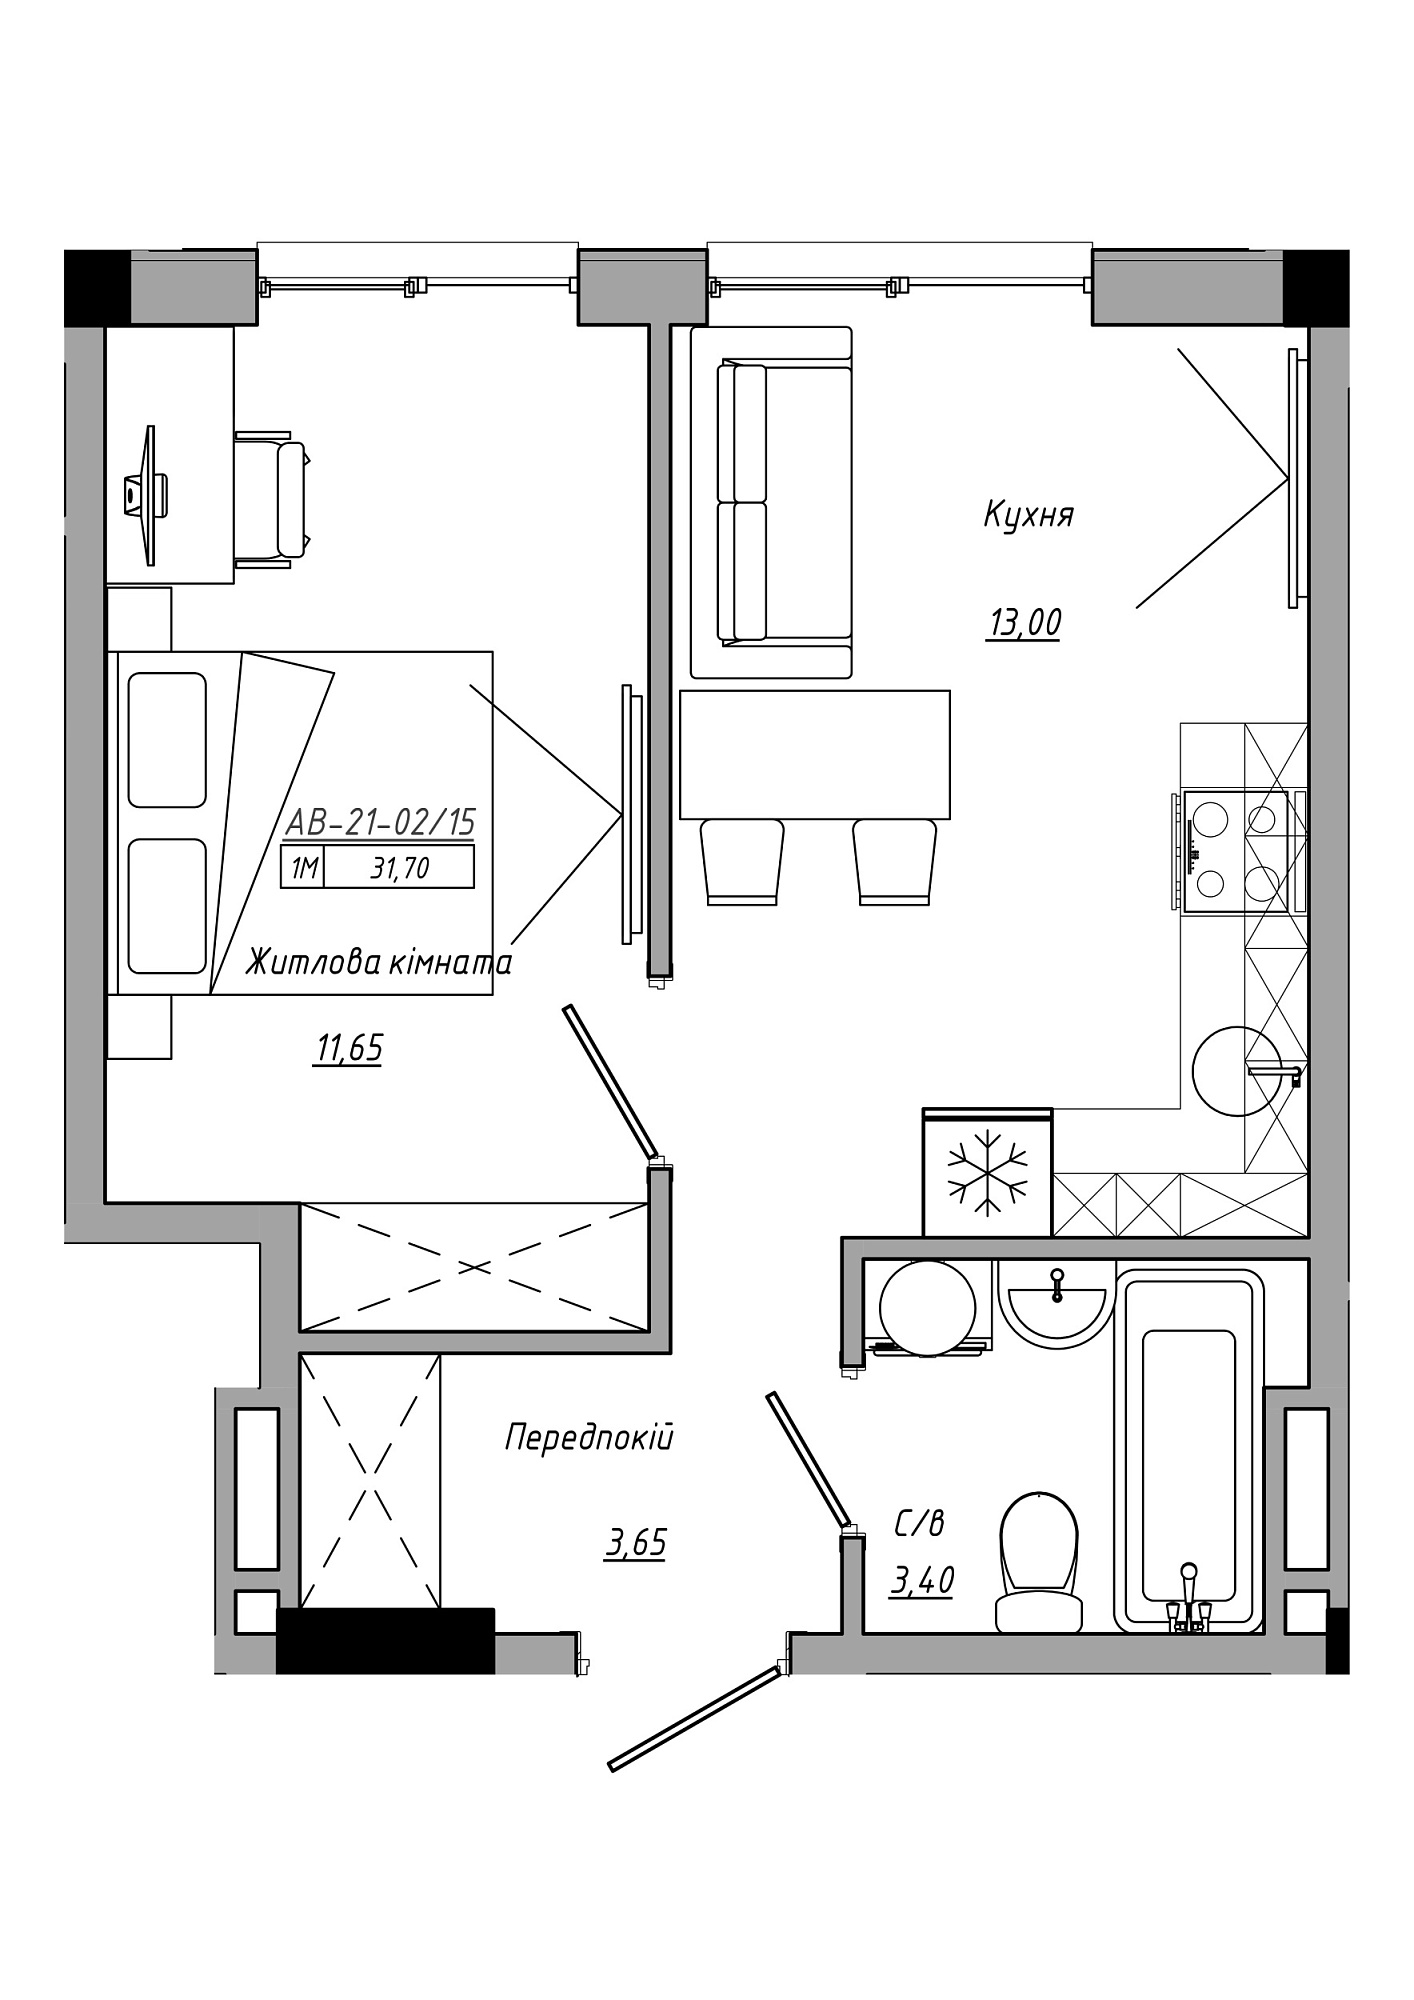 Планировка 1-к квартира площей 31.7м2, AB-21-02/00015.